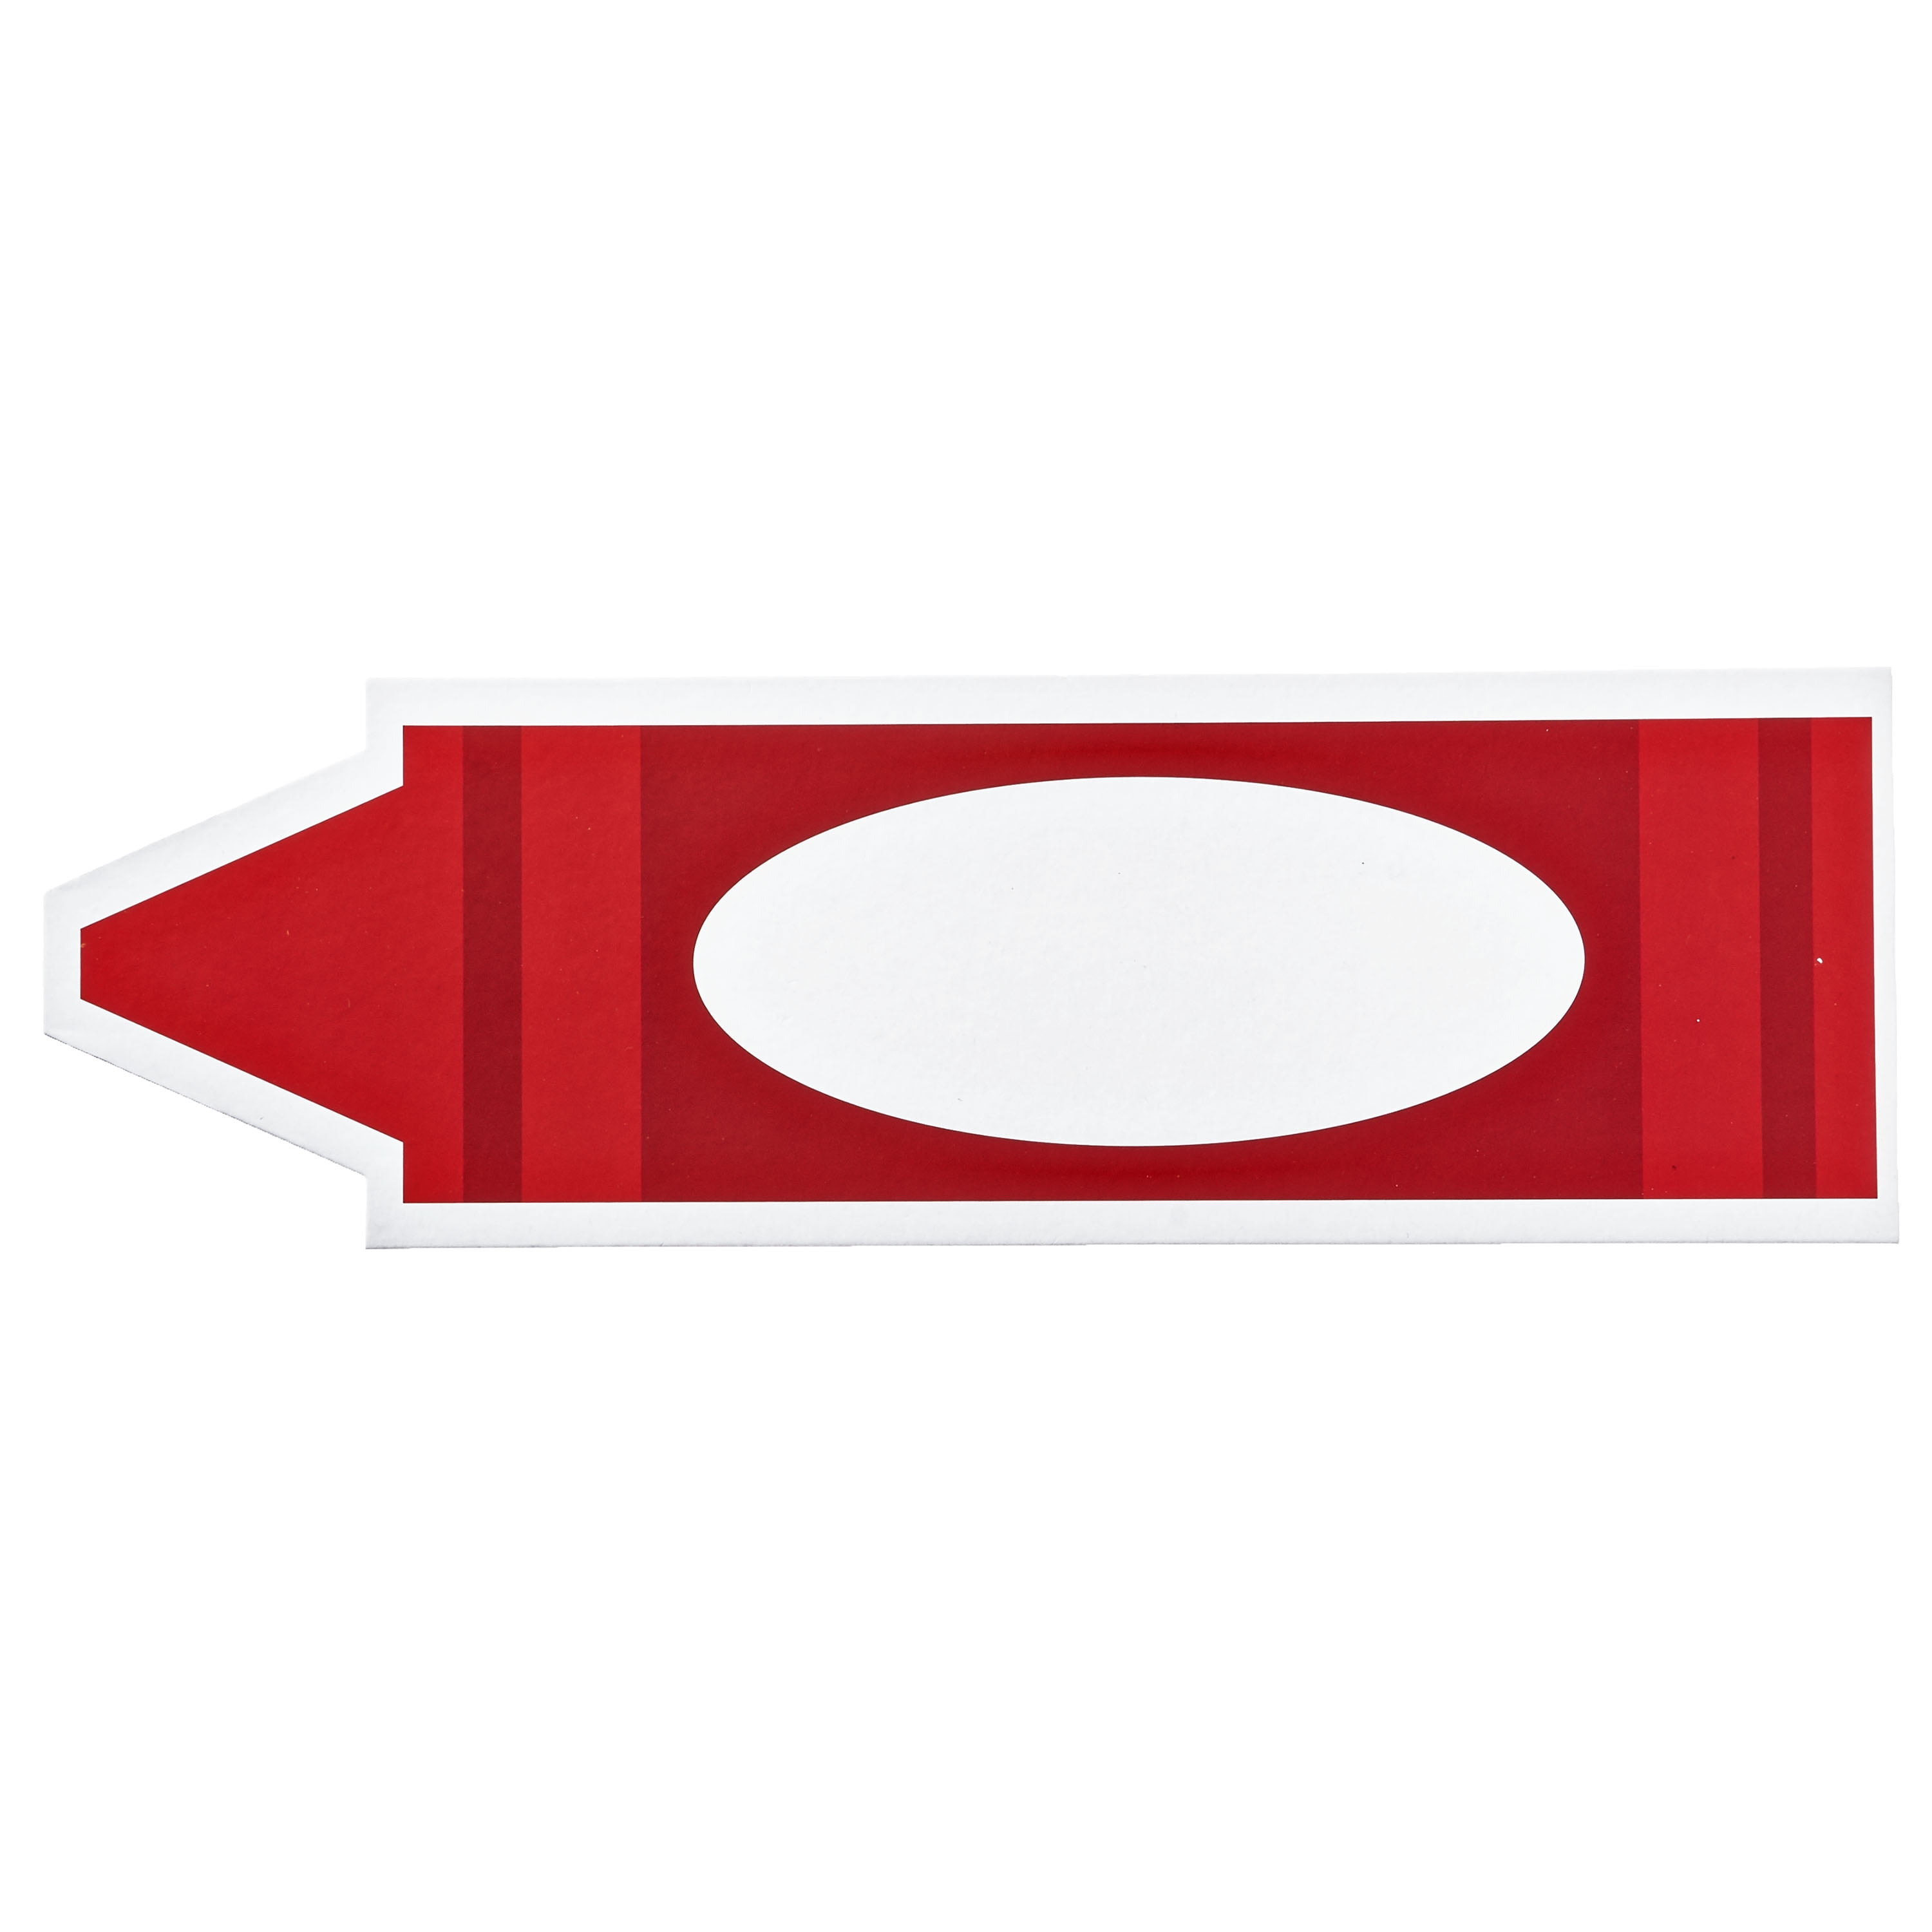 Crayon, red crayon icon